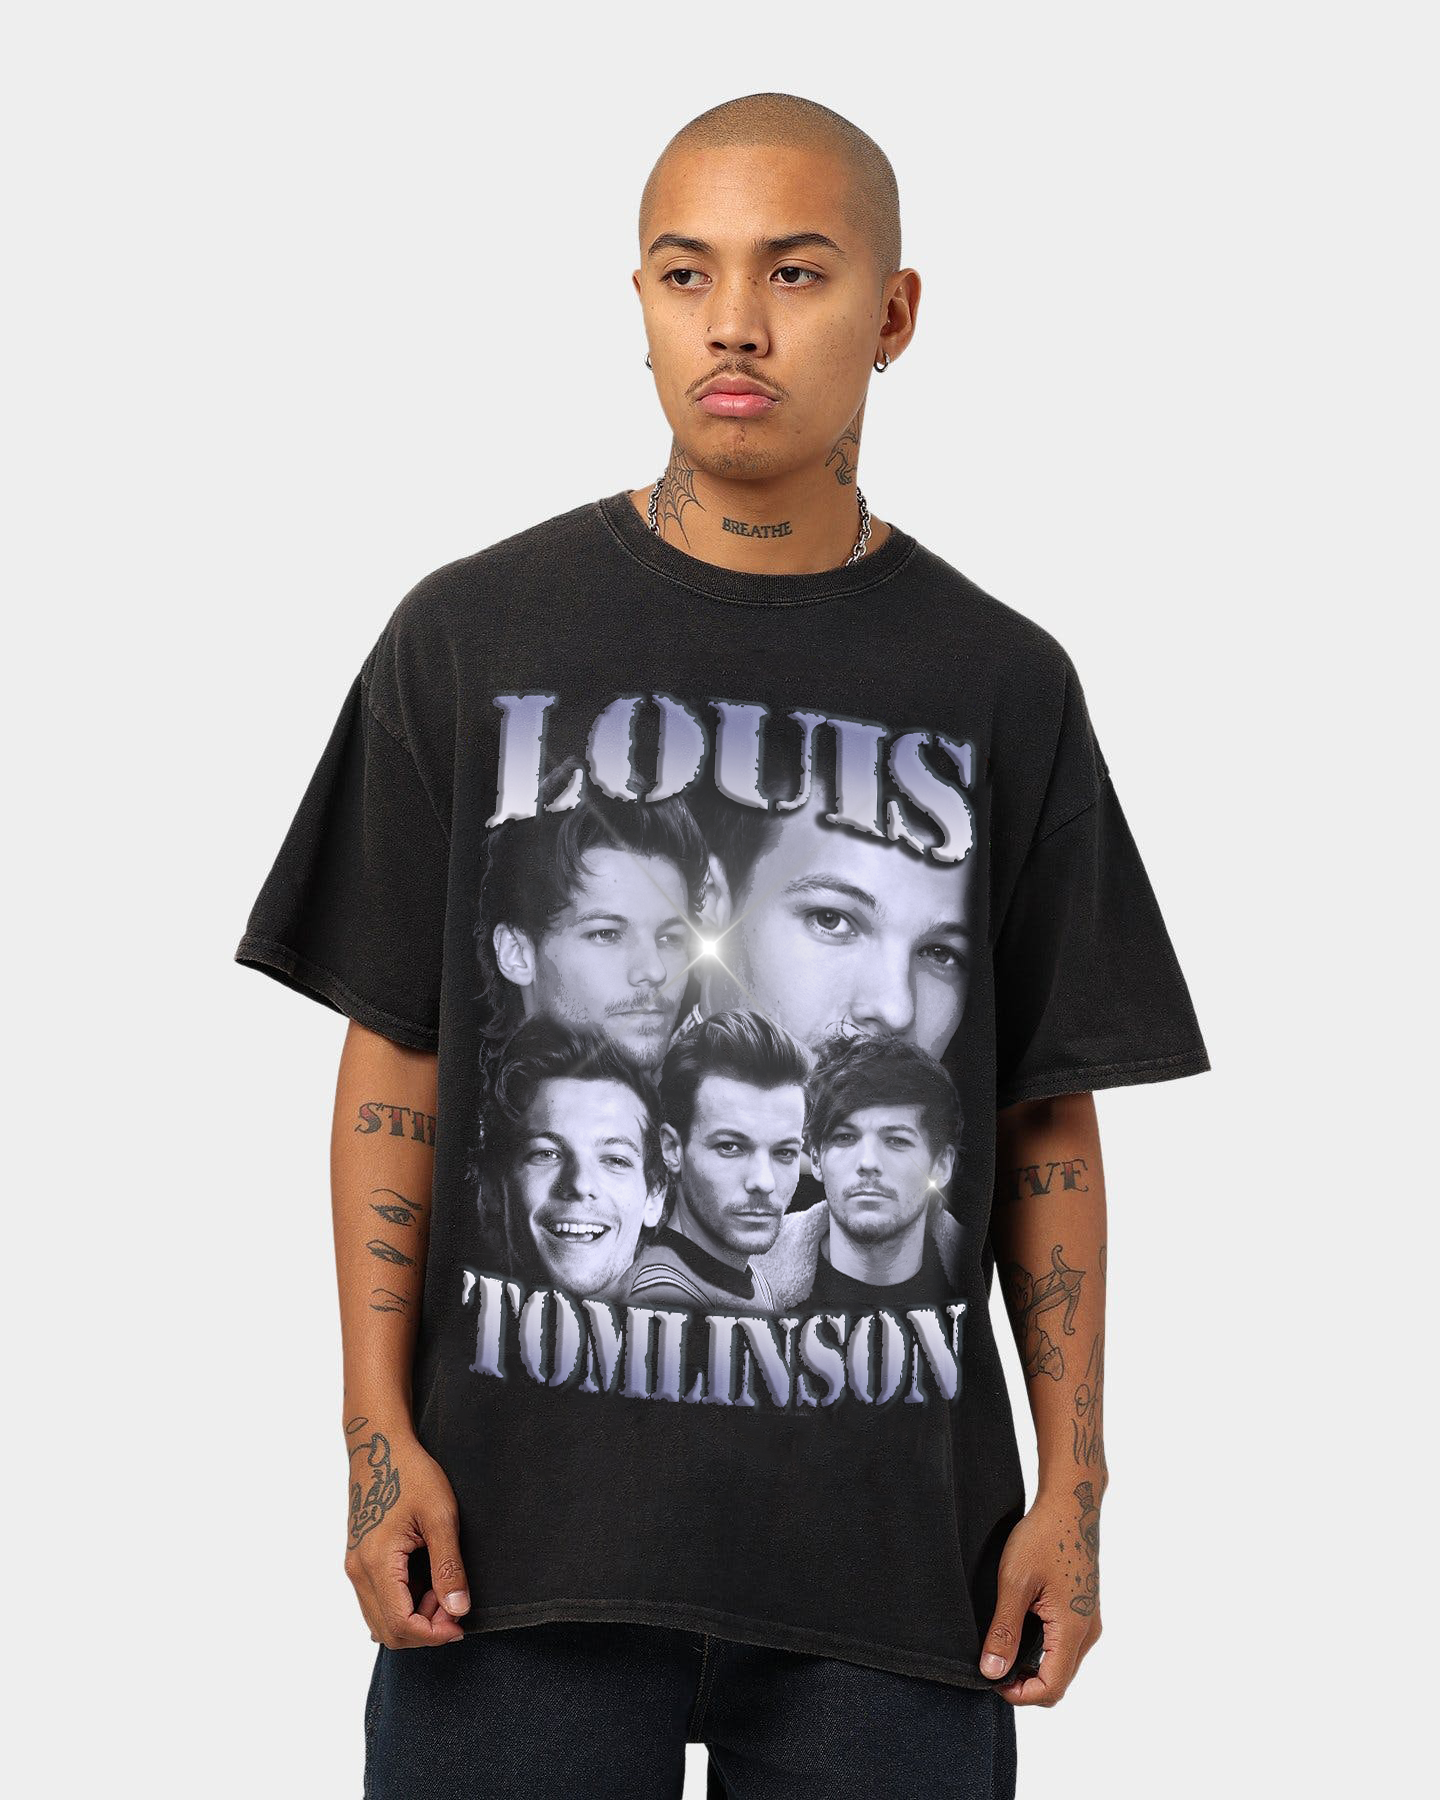 Vintage Walls Louis Tomlinson Shirt, Louis Tomlinson Merch, One Direction Shirt, Louis Tomlinson Fan Shirt Navy L Hoodie | Inora